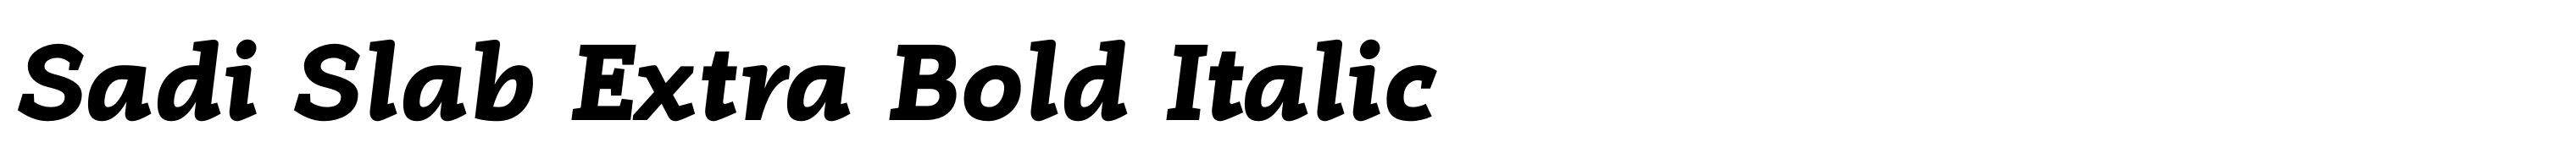 Sadi Slab Extra Bold Italic